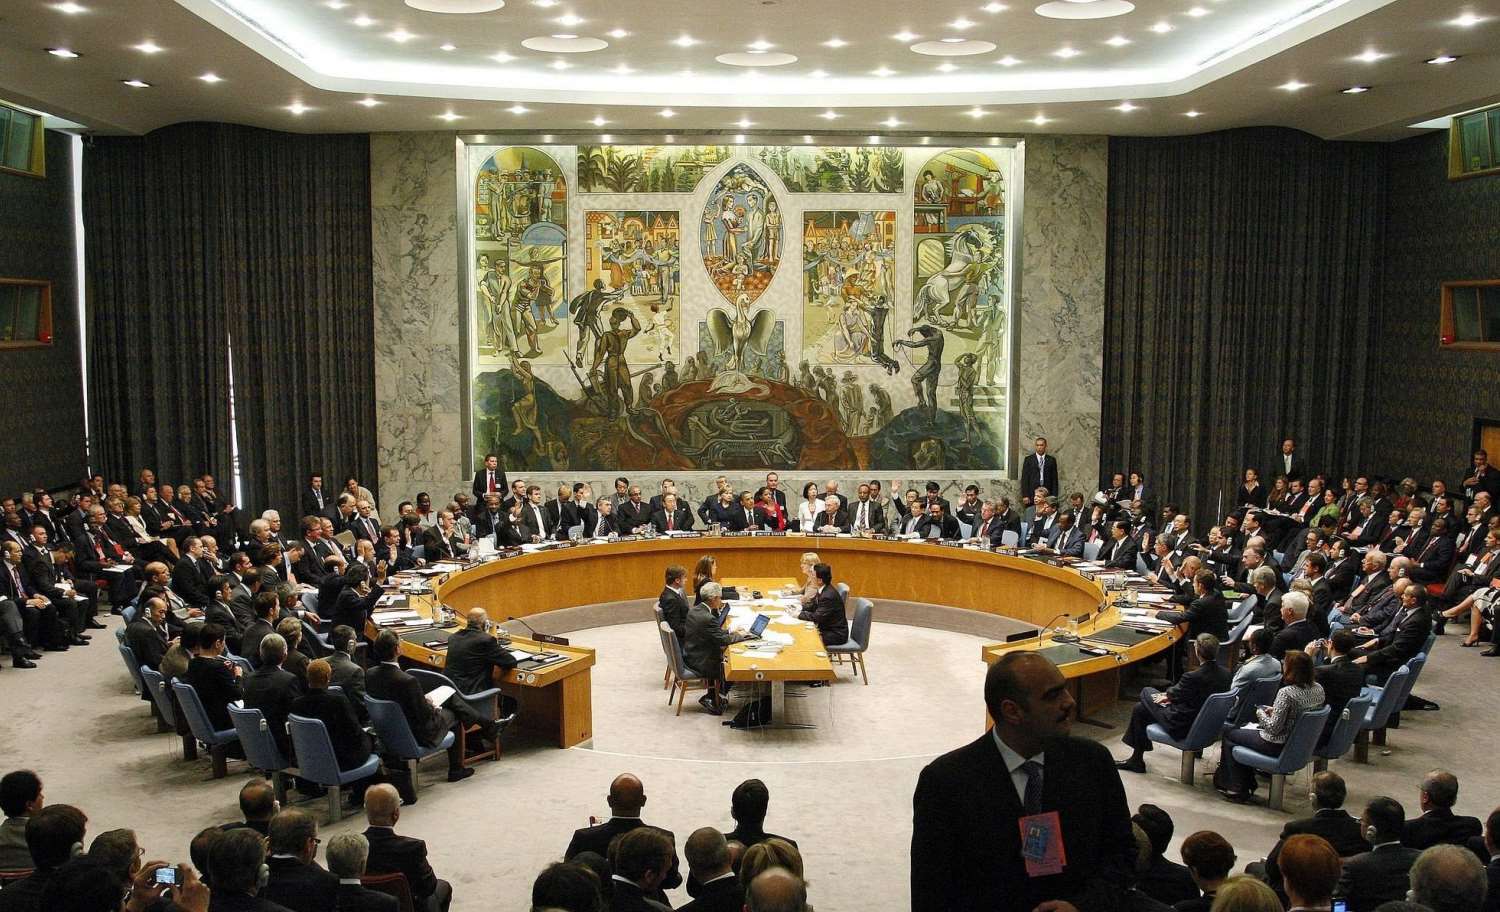 Σαρλ Μισέλ: «Η Ρωσία πρέπει να εξοστρακιστεί από το Συμβούλιο Ασφαλείας» – Γιατί αυτό δεν θα γίνει ποτέ